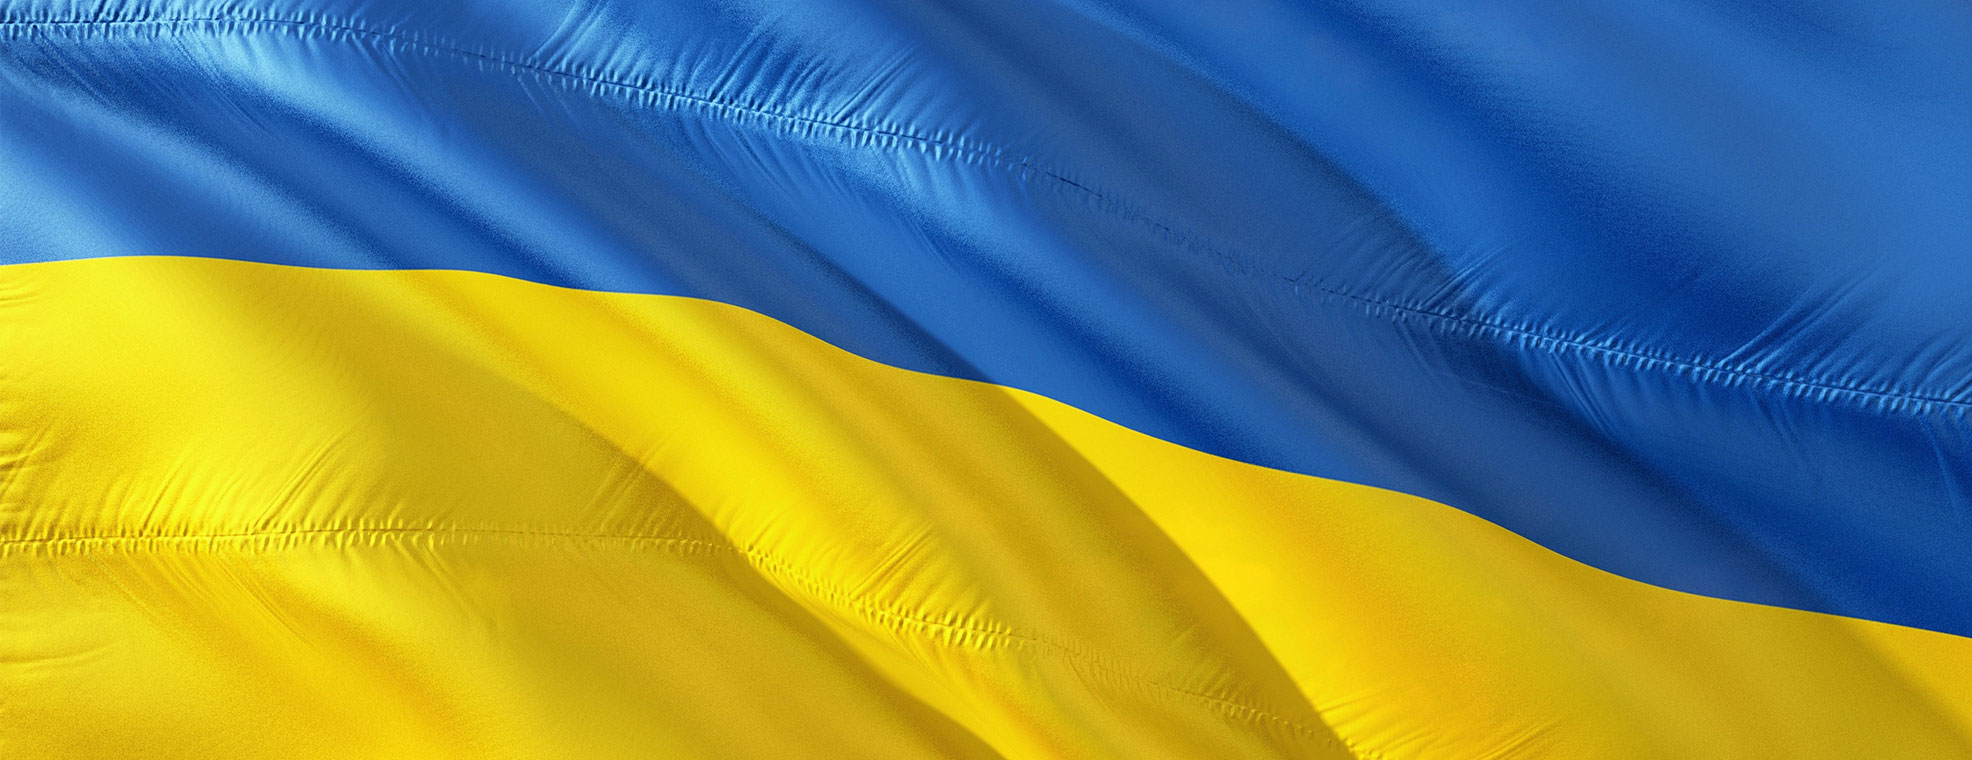 Wir stehen solidarisch an der Seite der Ukraine